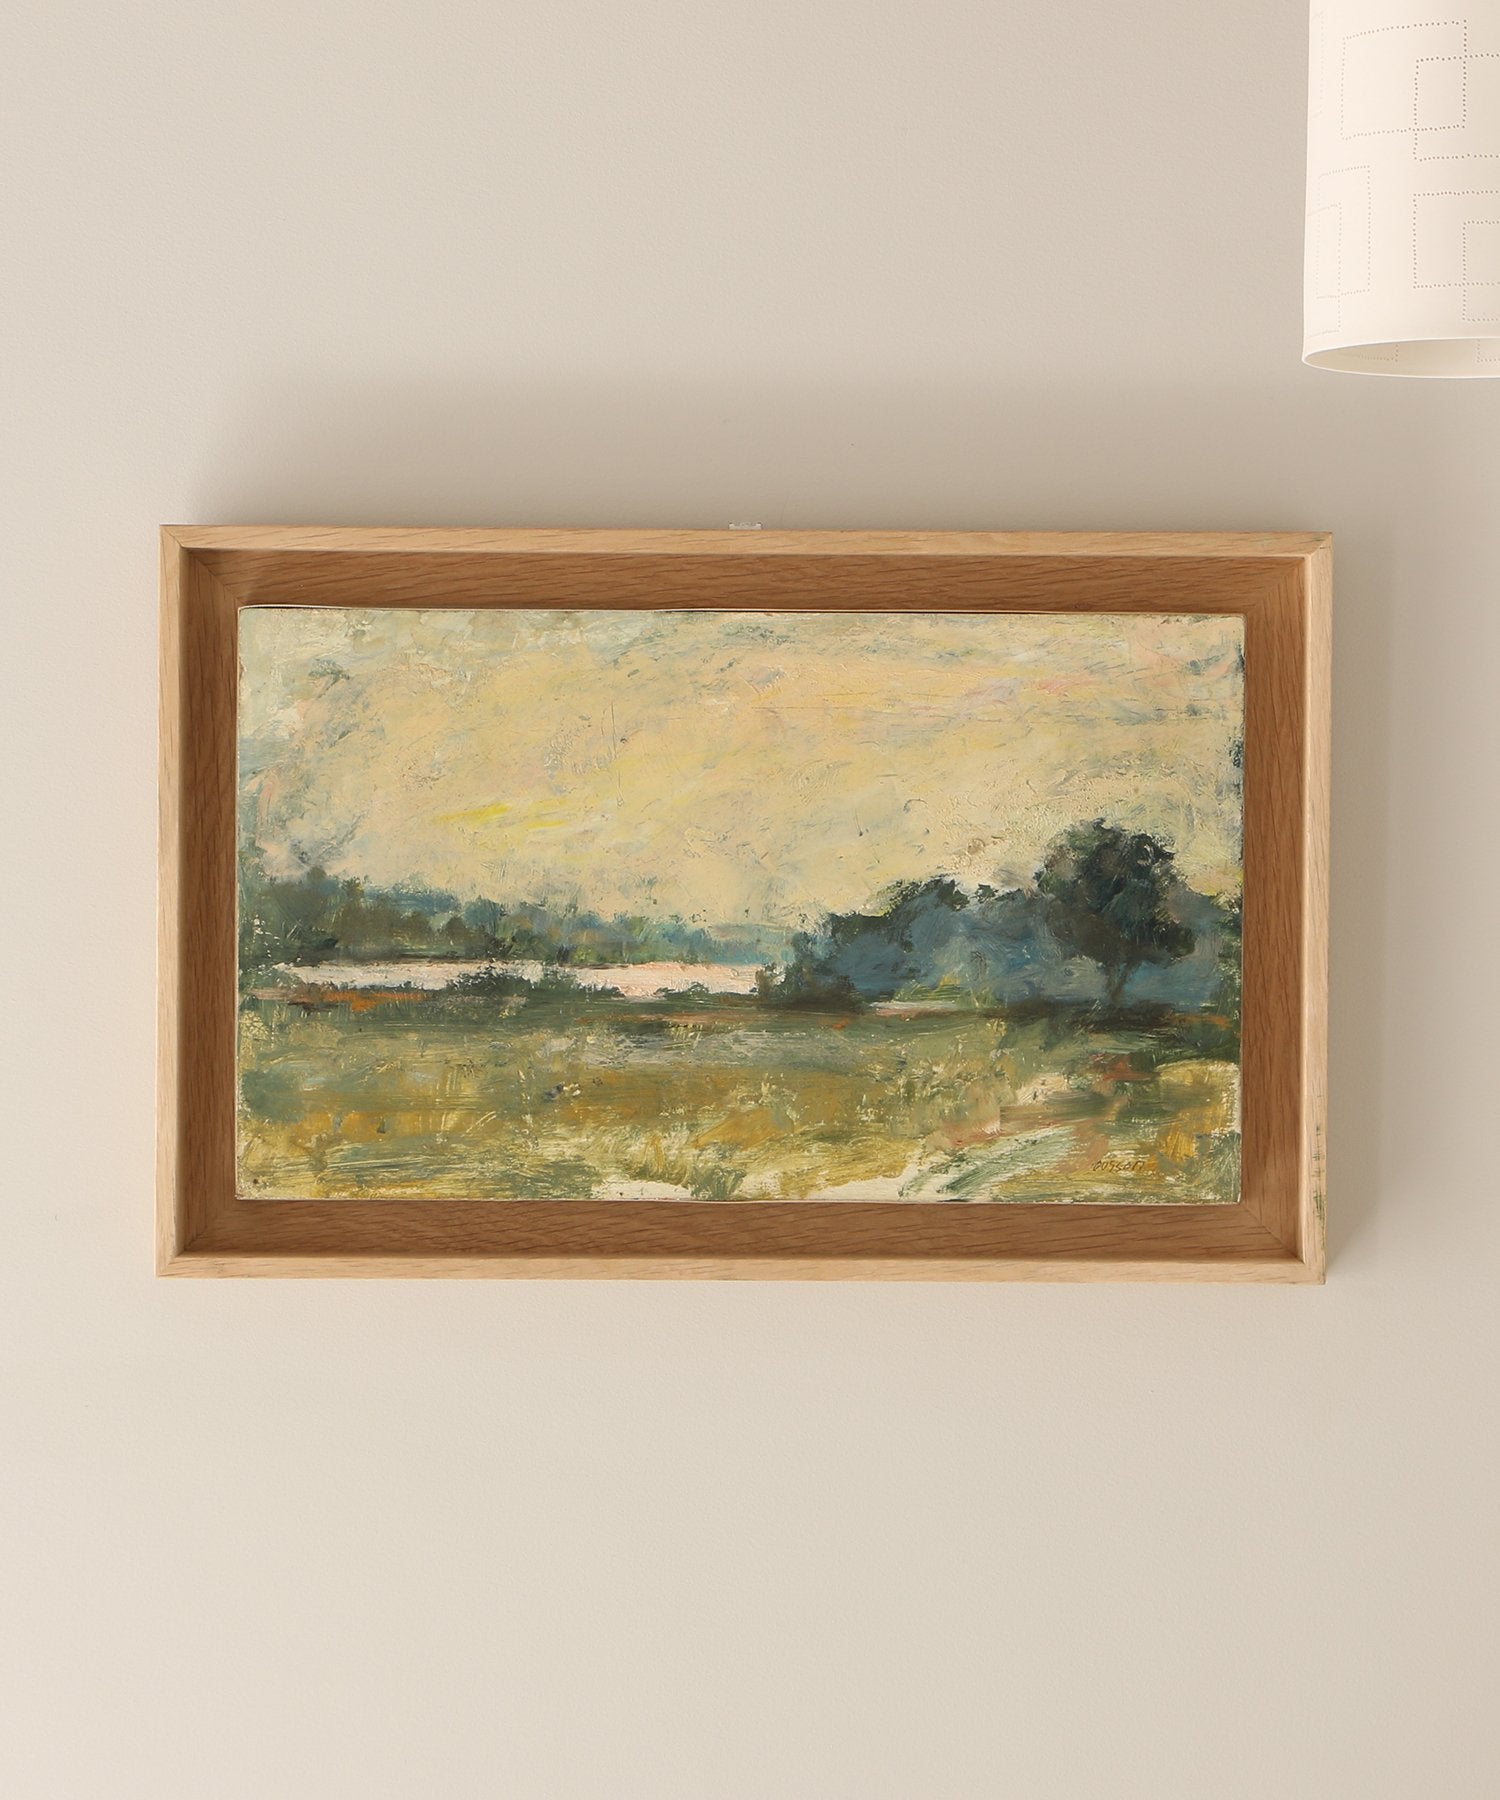 Zèbres « Le Bec d'Allier », huile sur toile, 24 x 41 cm - Jacques Ousson, 2000 (30)